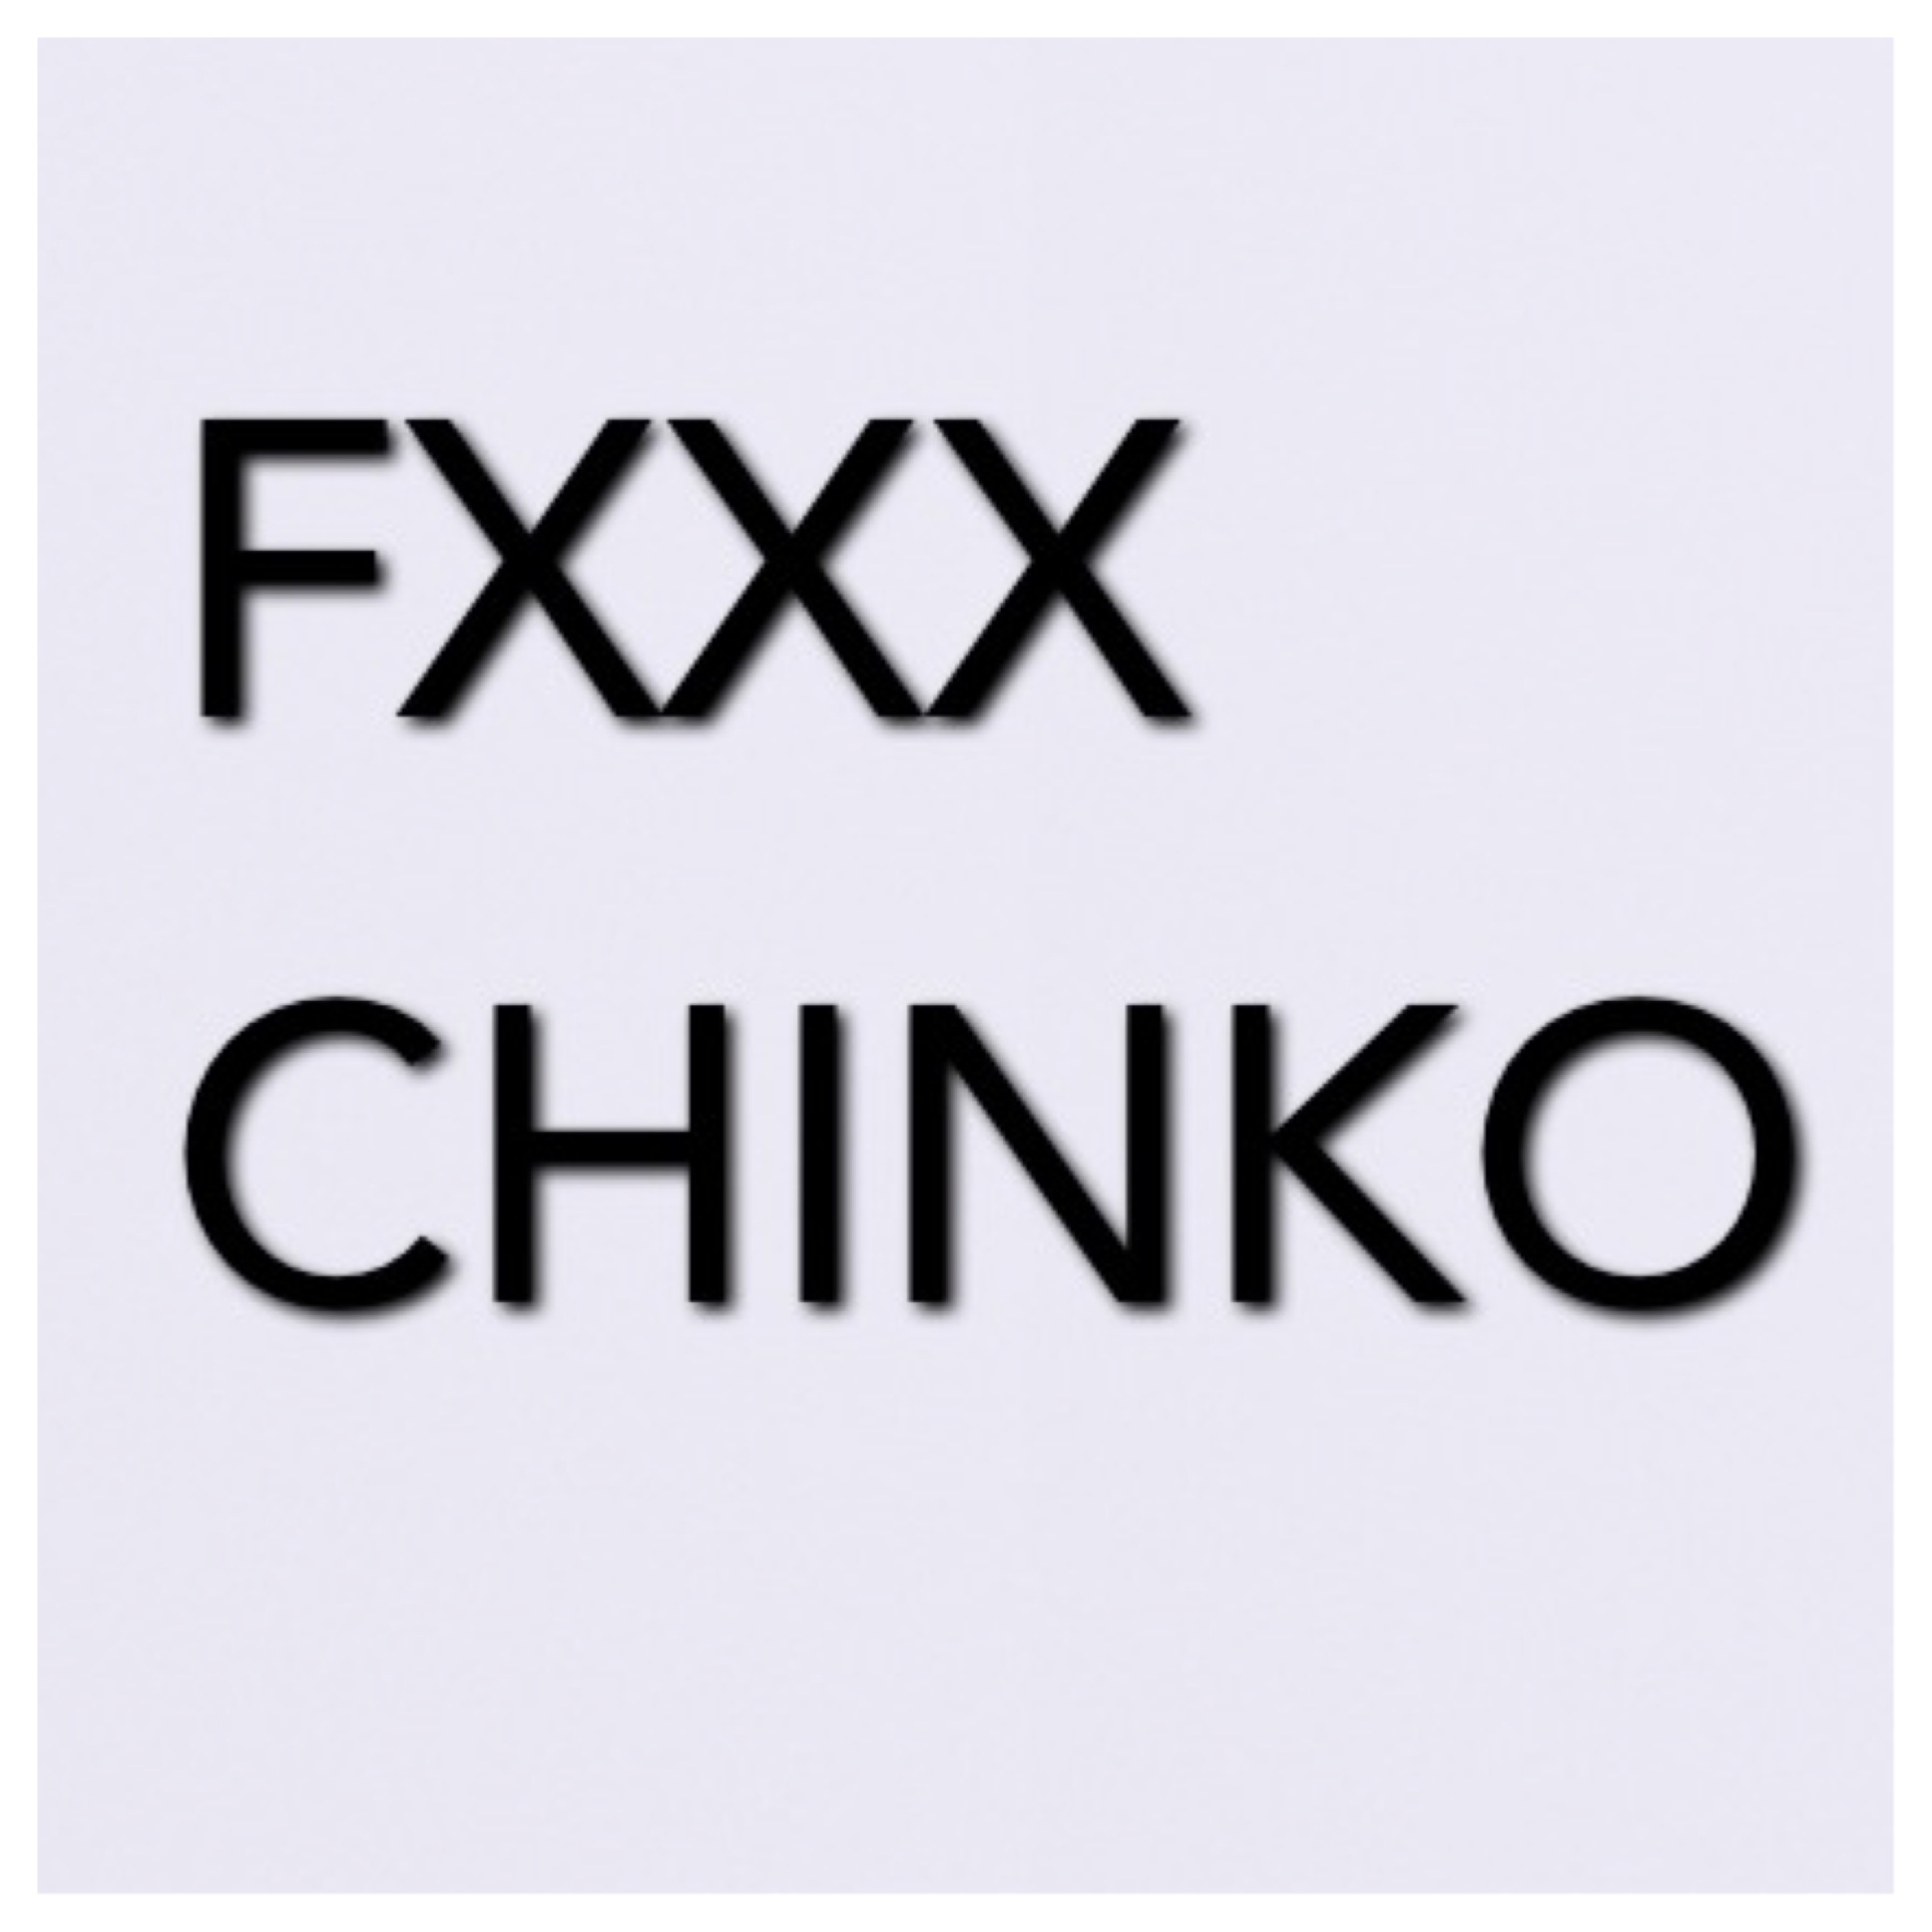 sosa-fxxx-chinko-HHS1987-2013 Sosa - FXXX CHINKO (Dissin Chinko Da Great)  